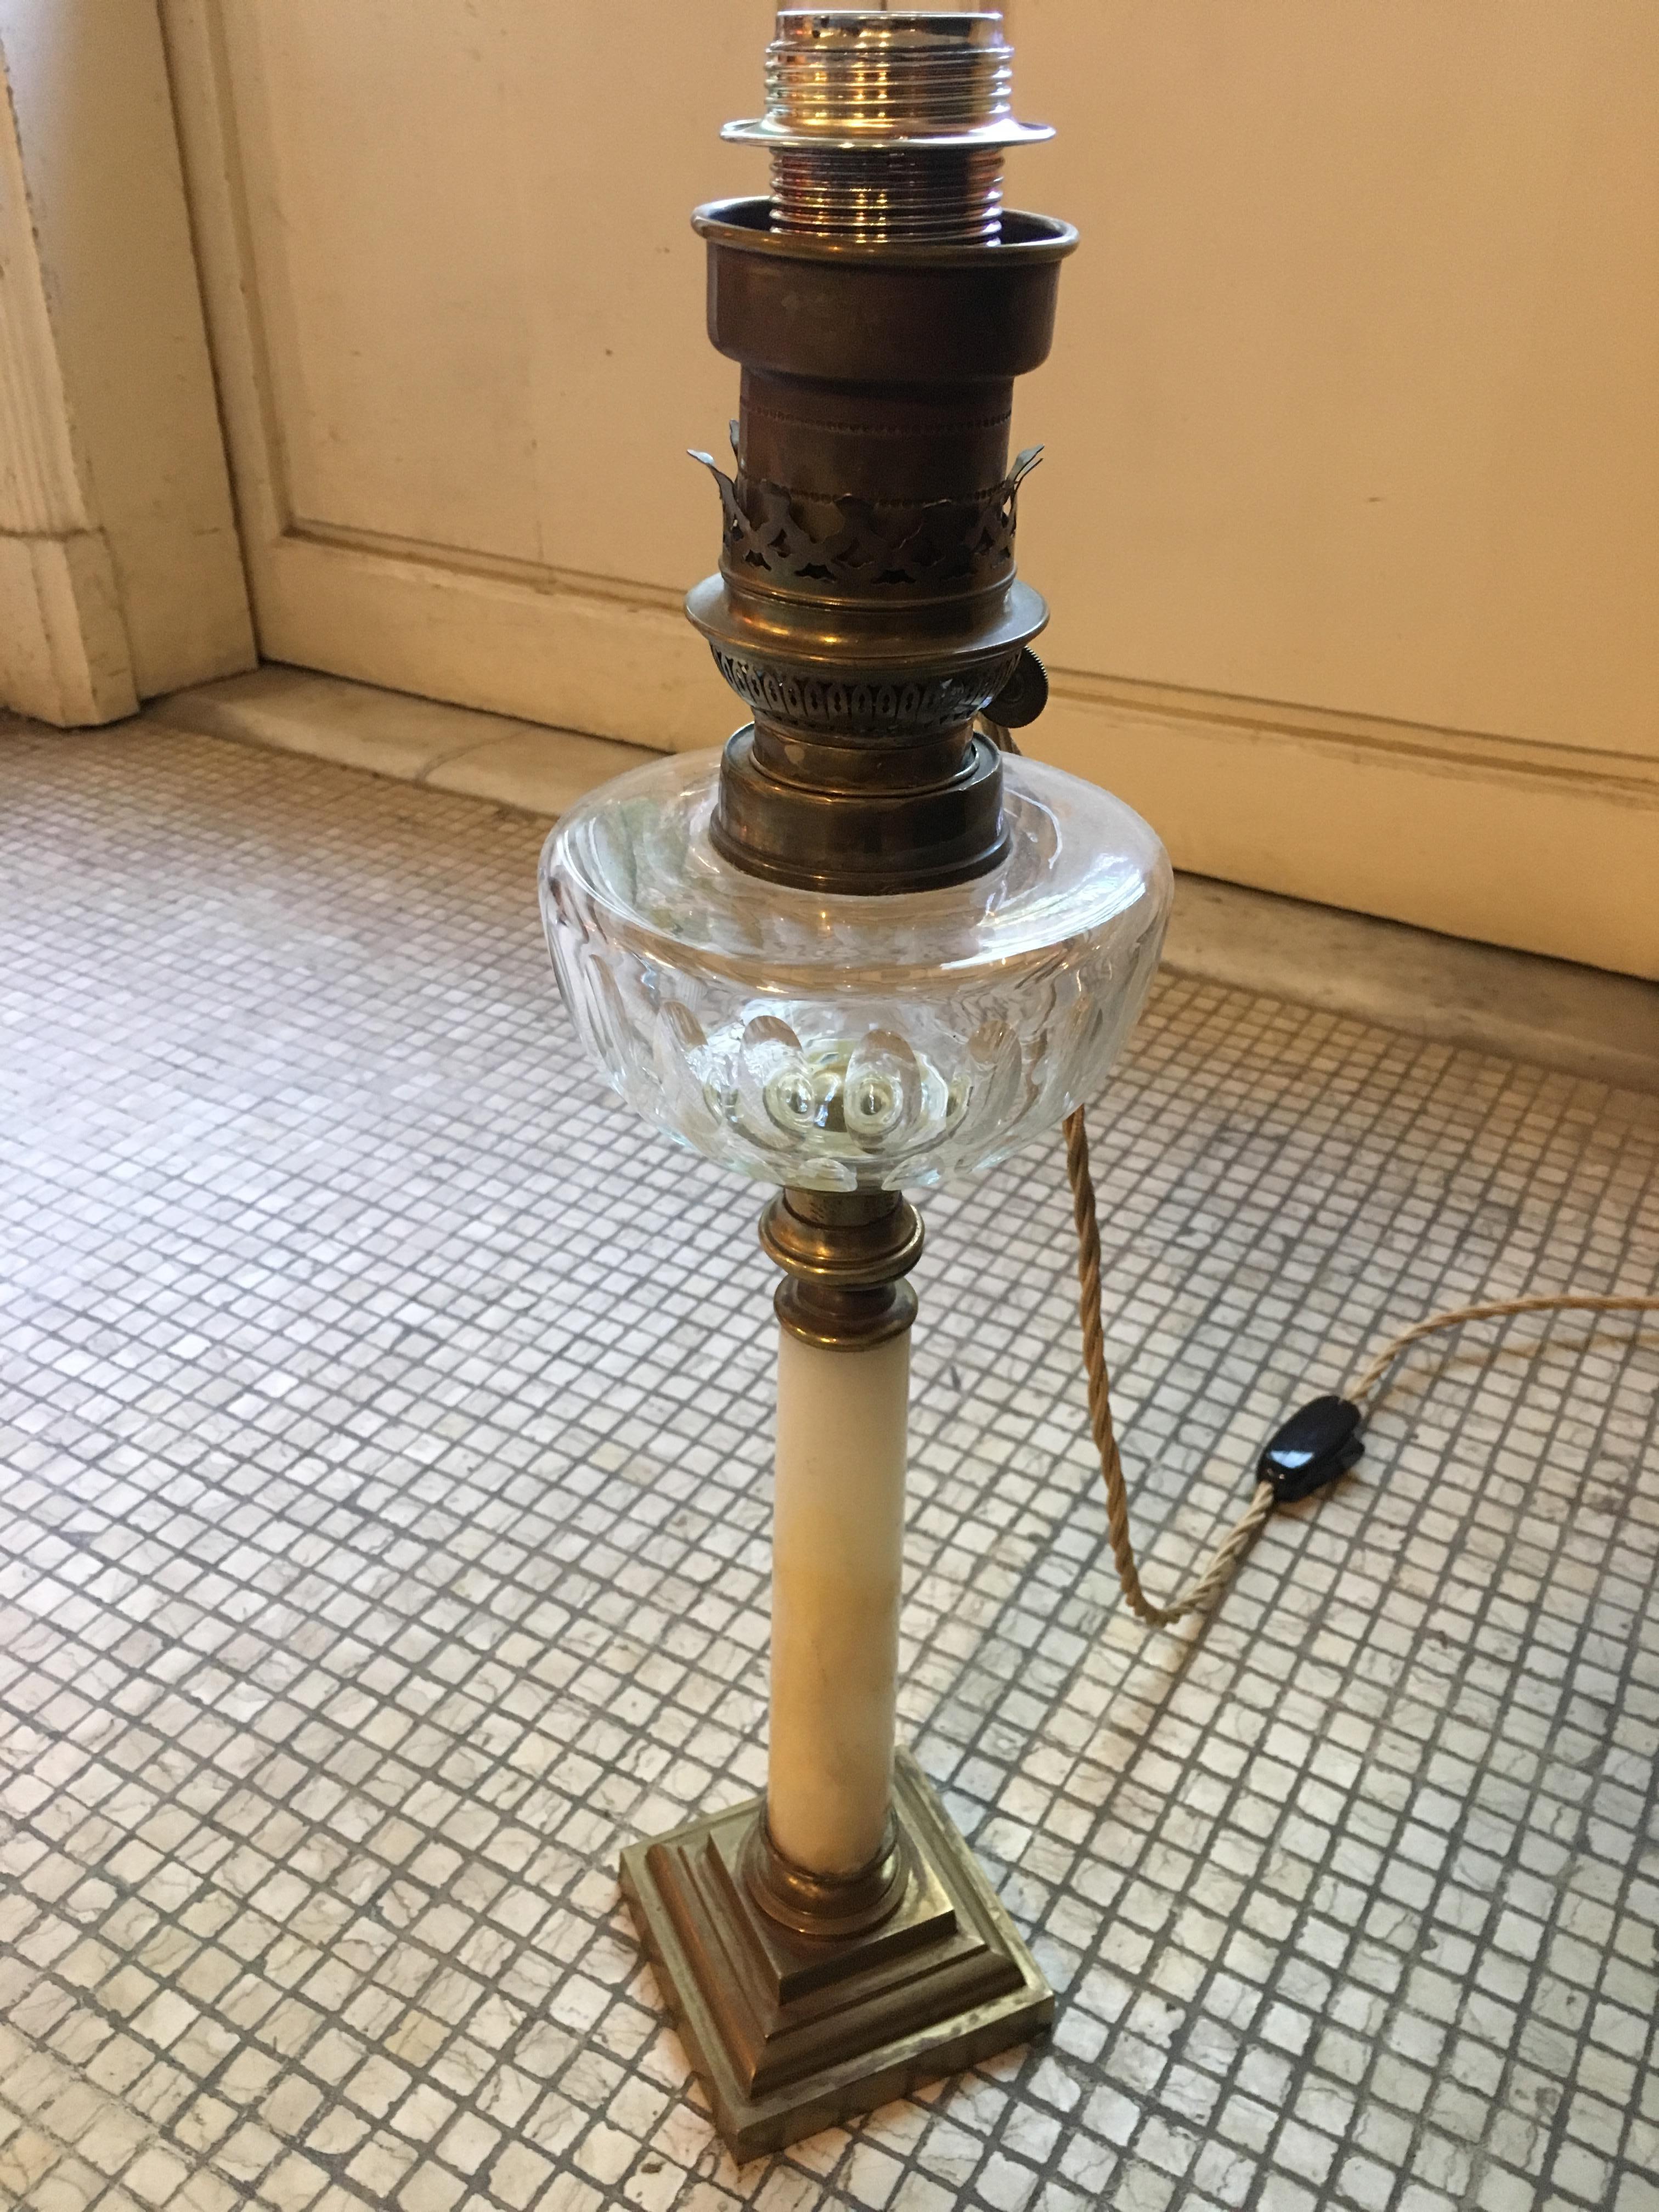 19th century oil lamp